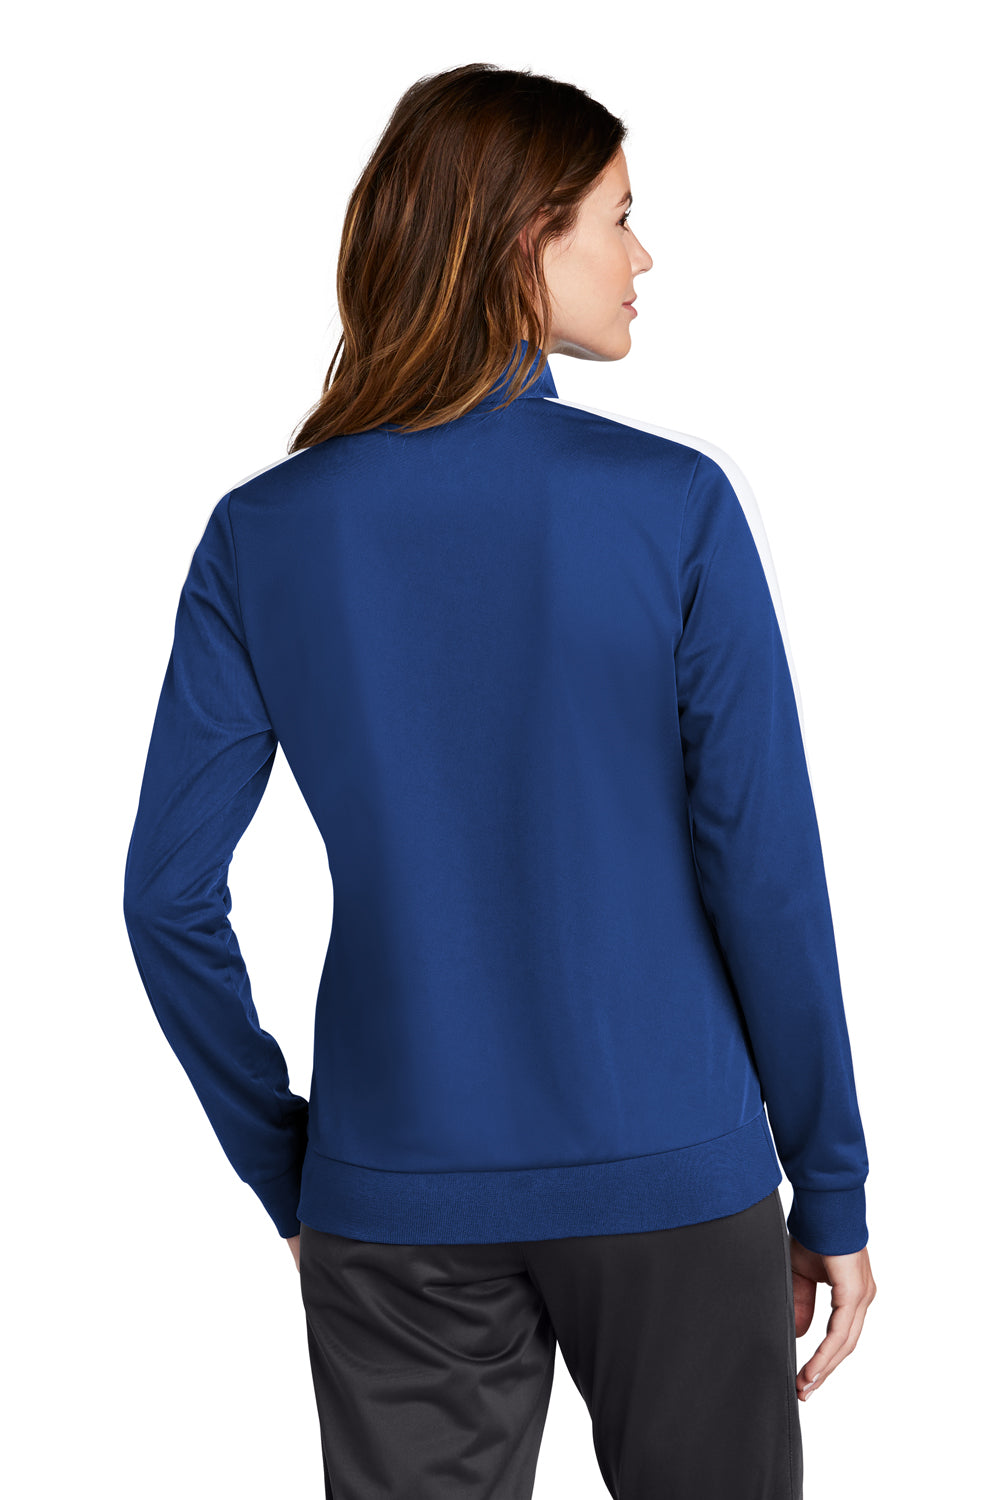 Sport-Tek Womens Full Zip Track Jacket True Royal Blue/White Side